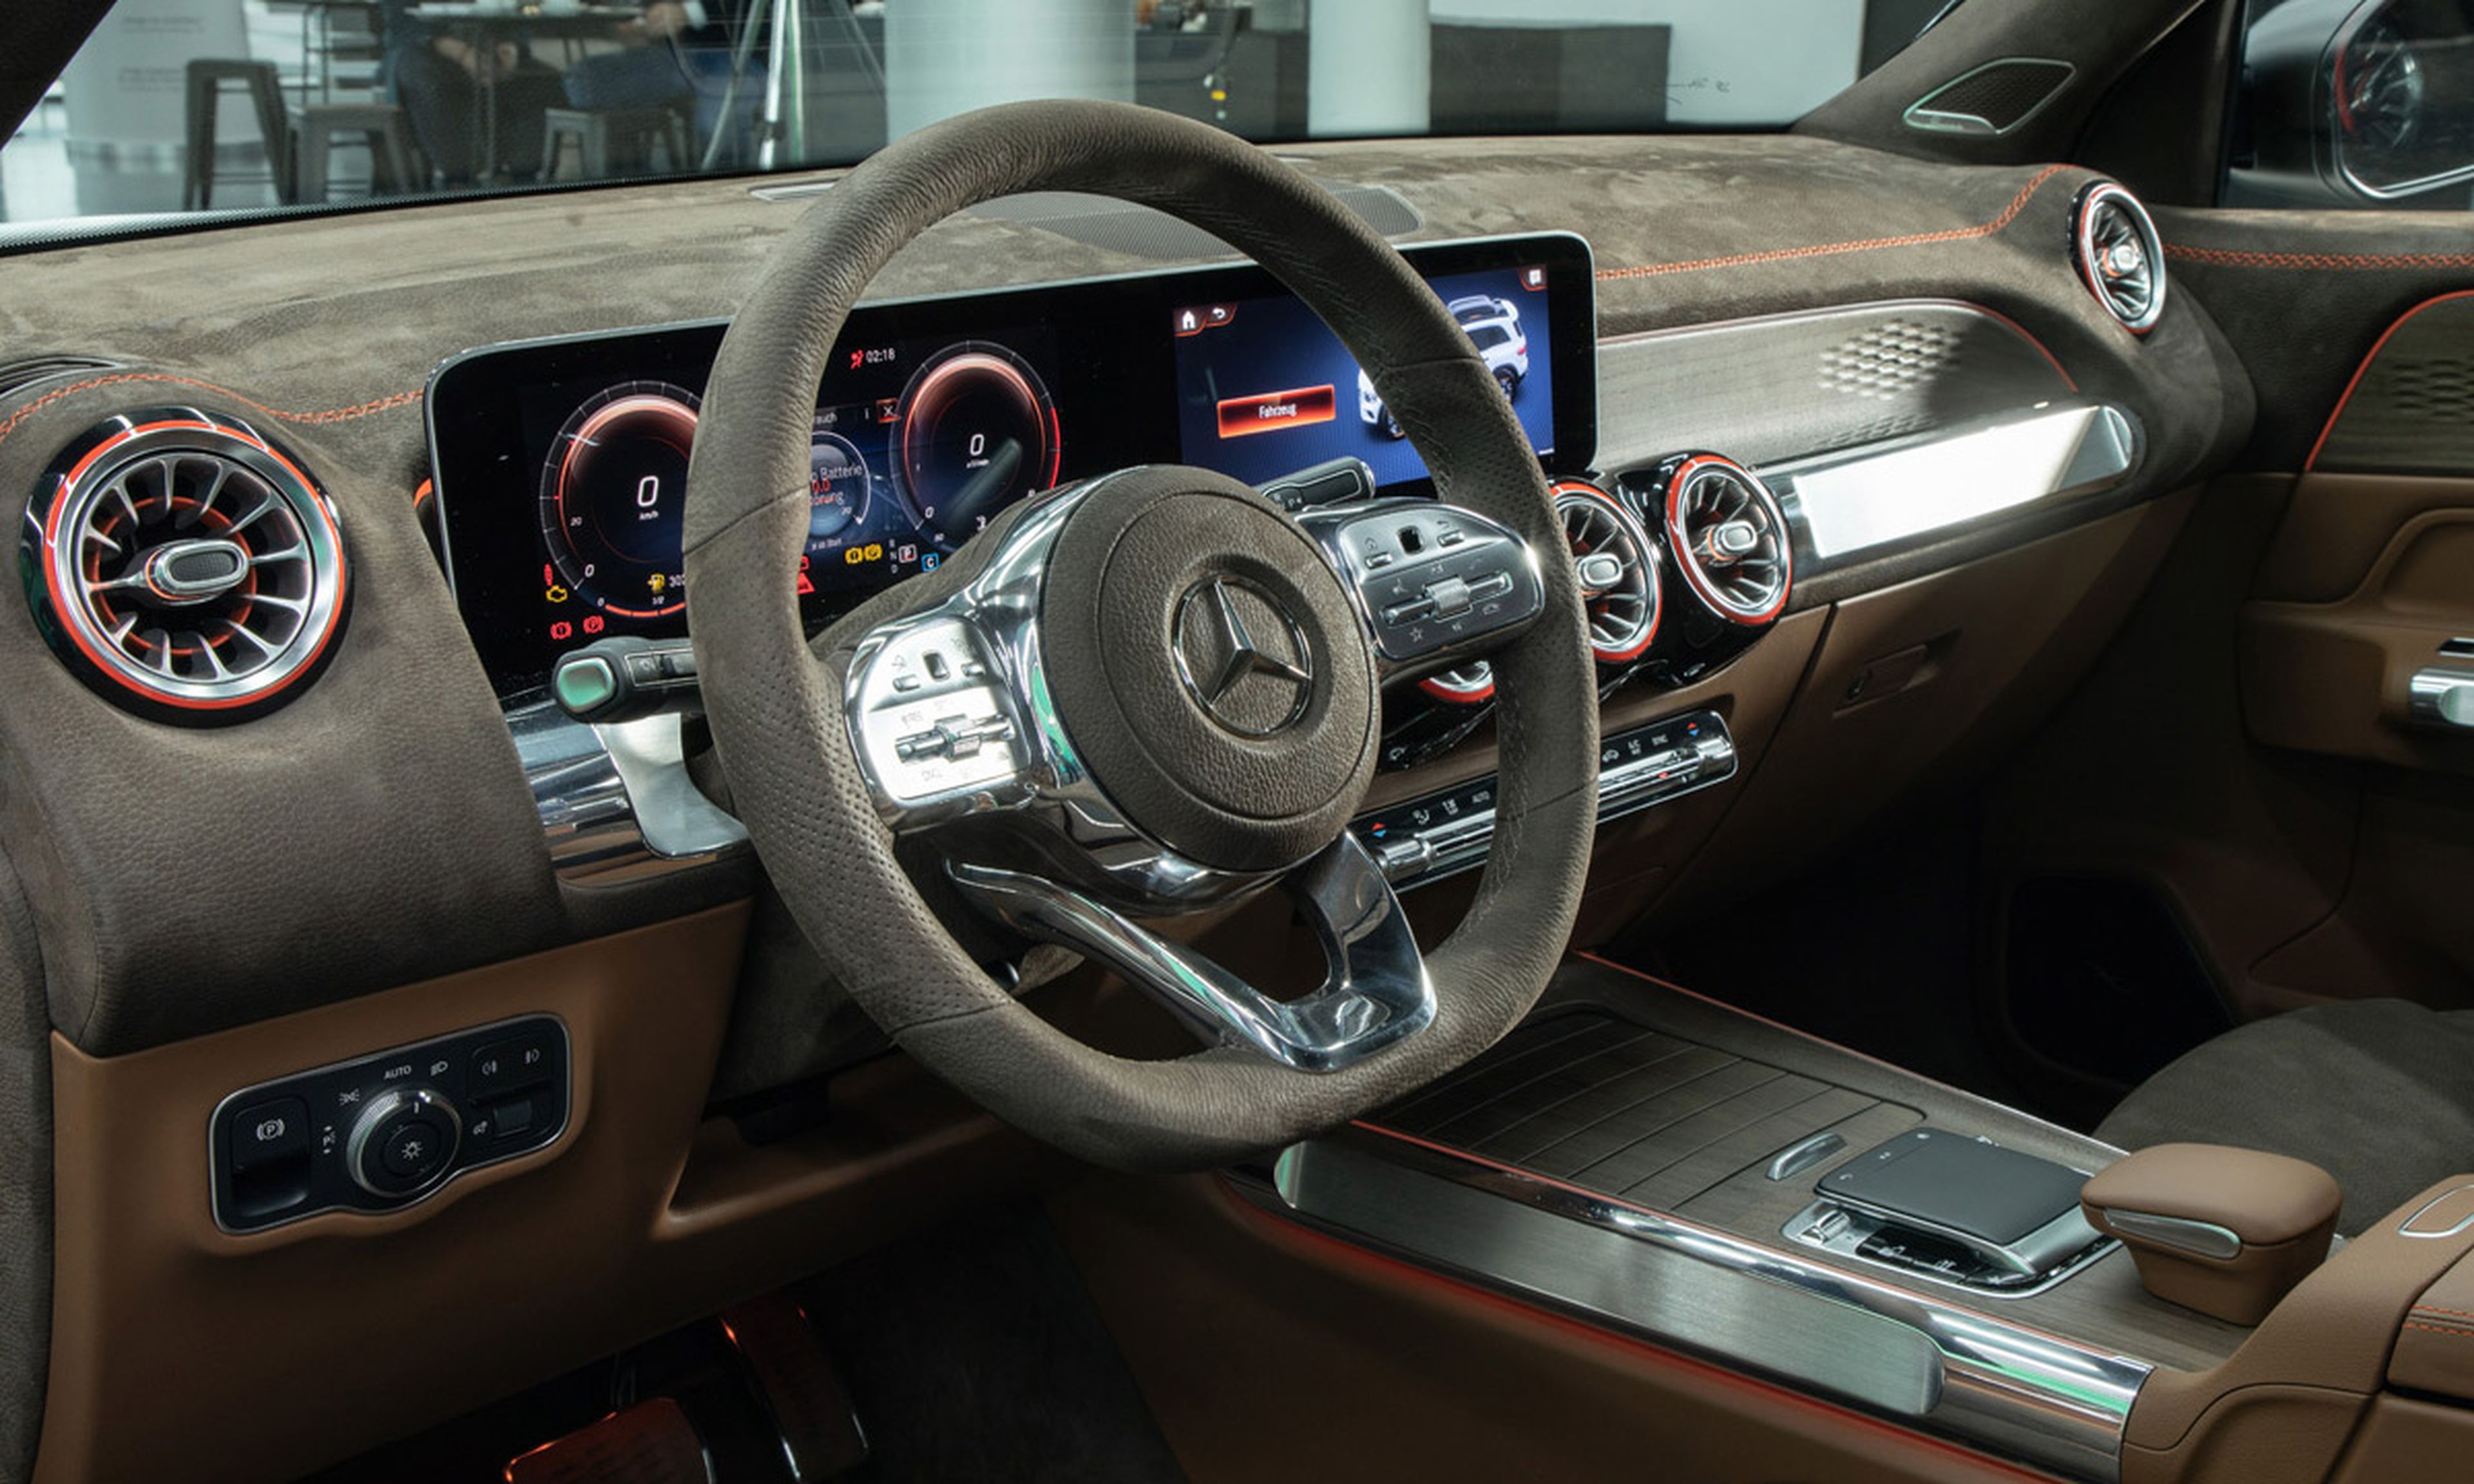 Mercedes GLB Concept